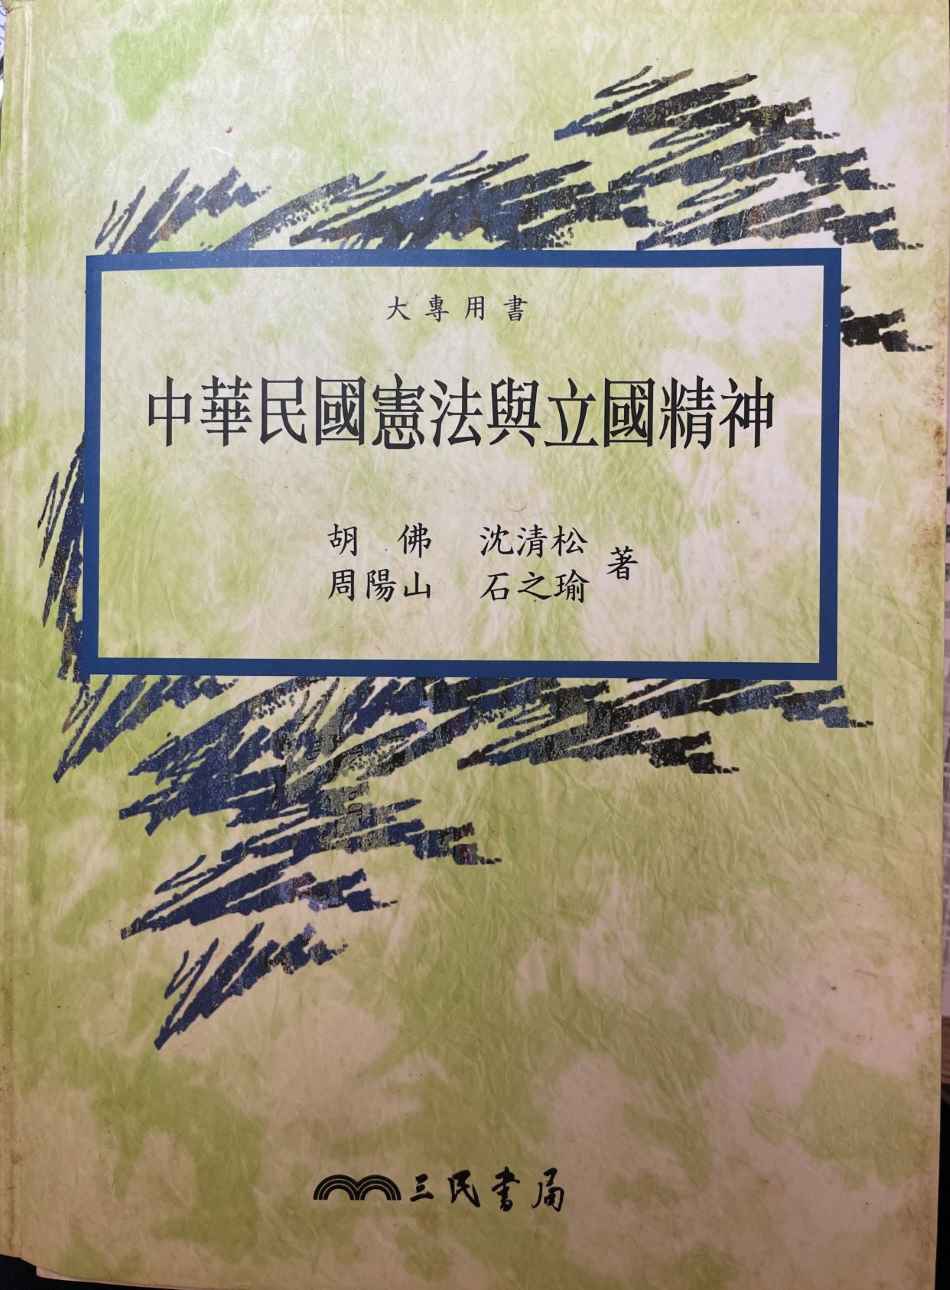 中華民國憲法與立國精神 詳細資料